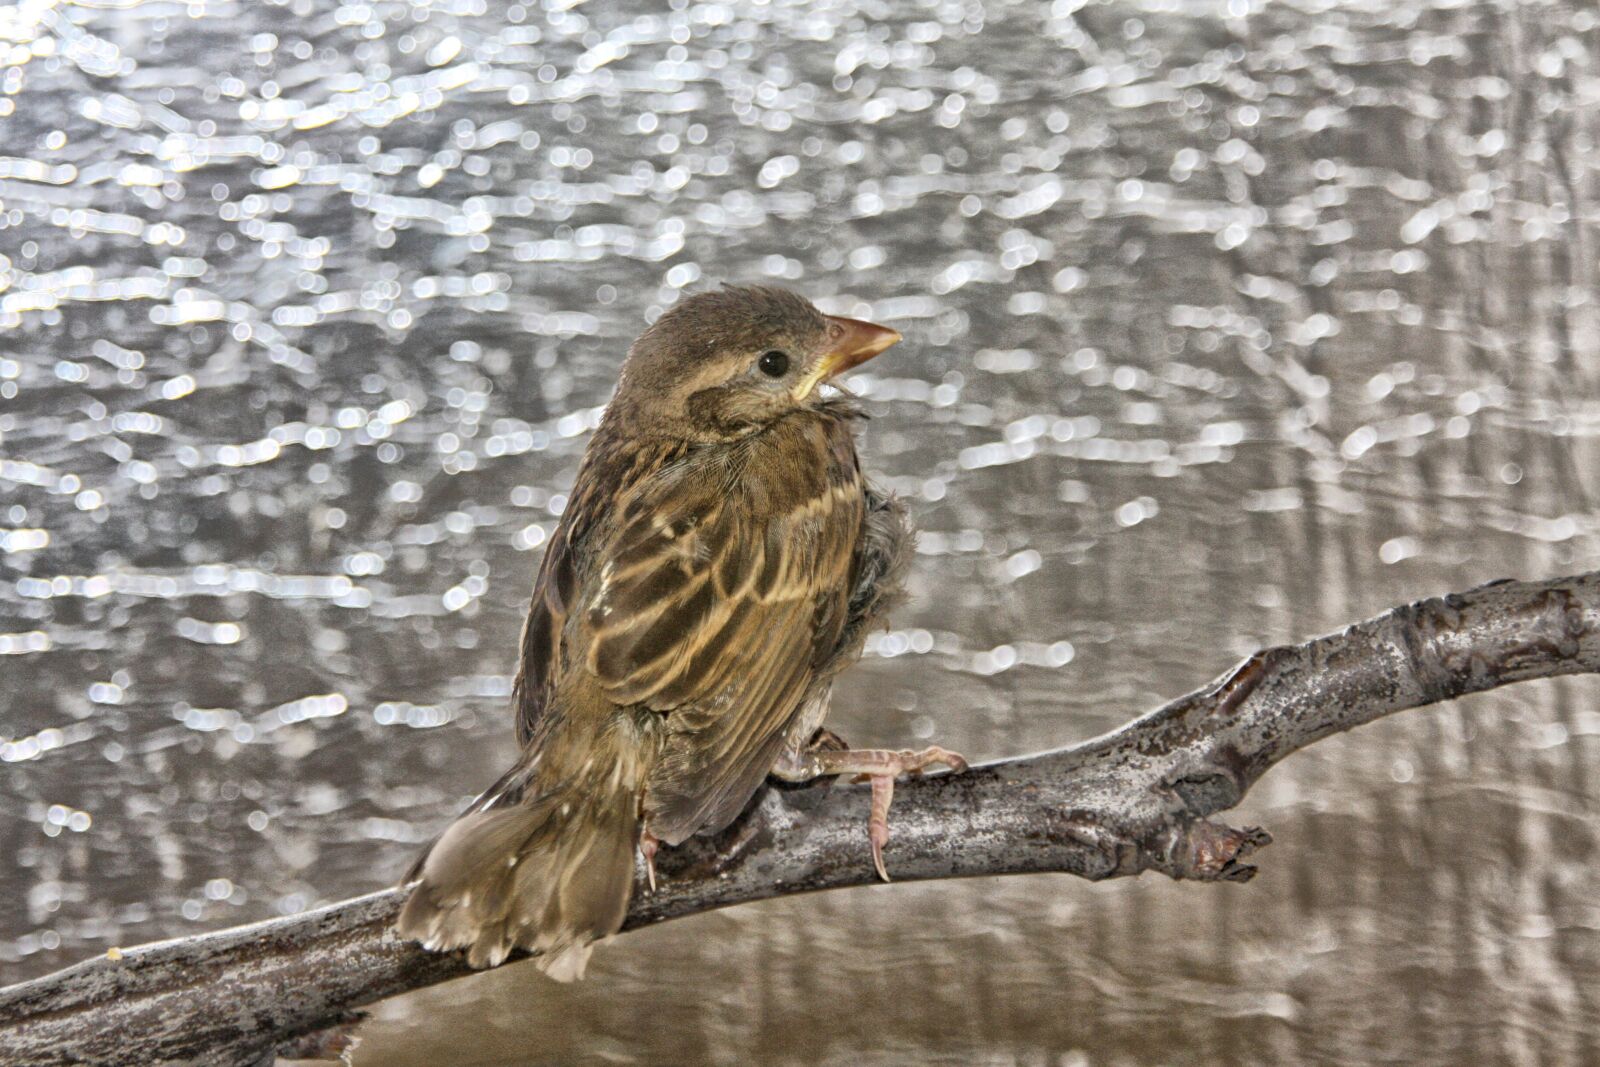 Canon EOS 40D sample photo. Sparrow, bird, cute photography